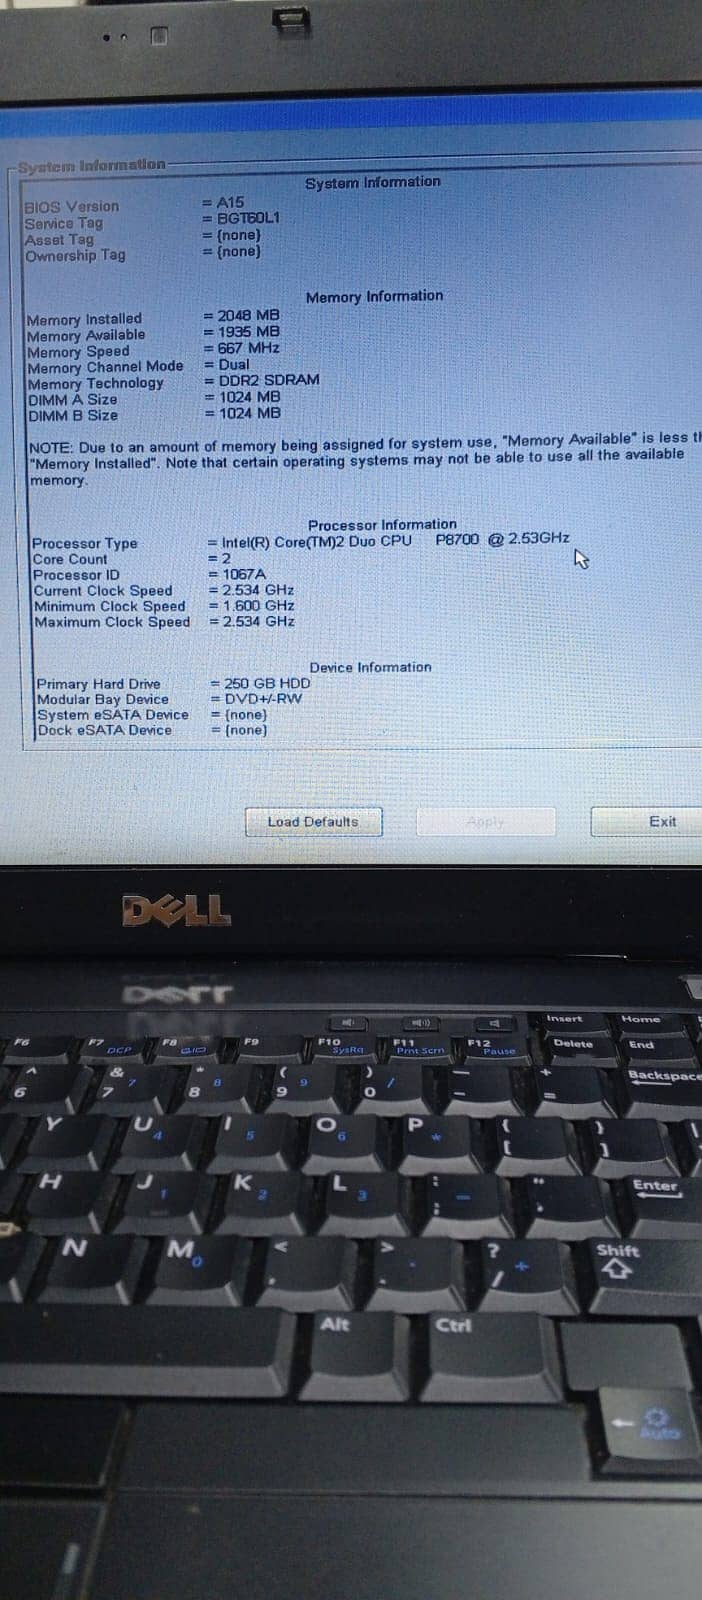 Dell Laptop E6400 For sale in Multan 4